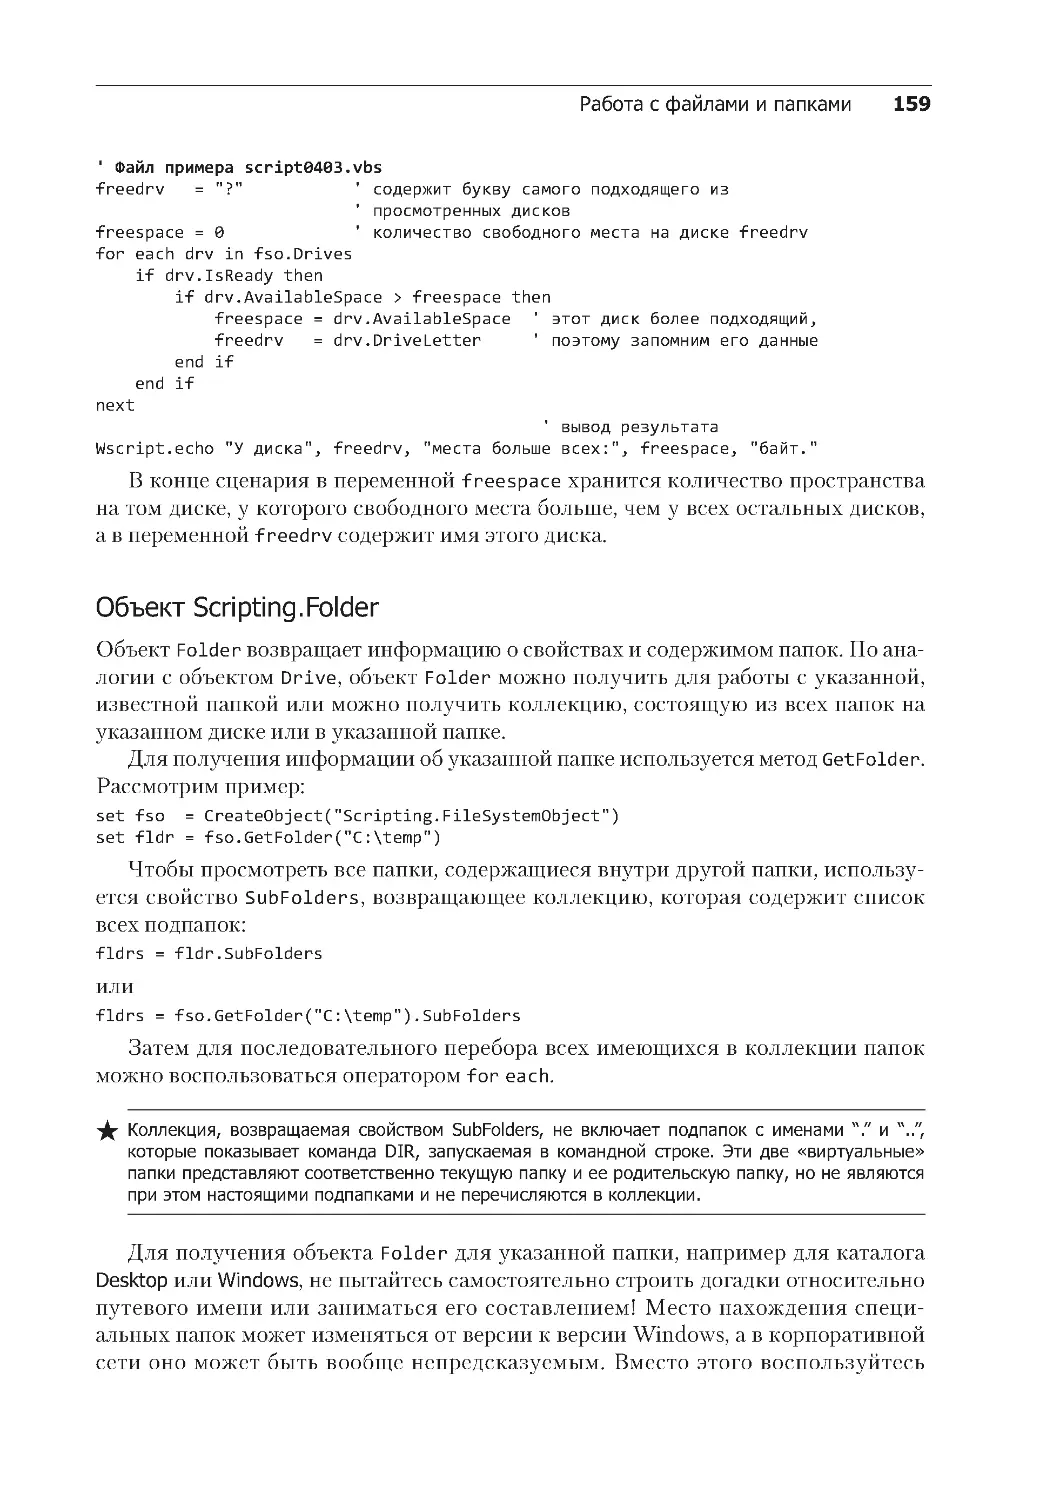 Объект Scripting.Folder